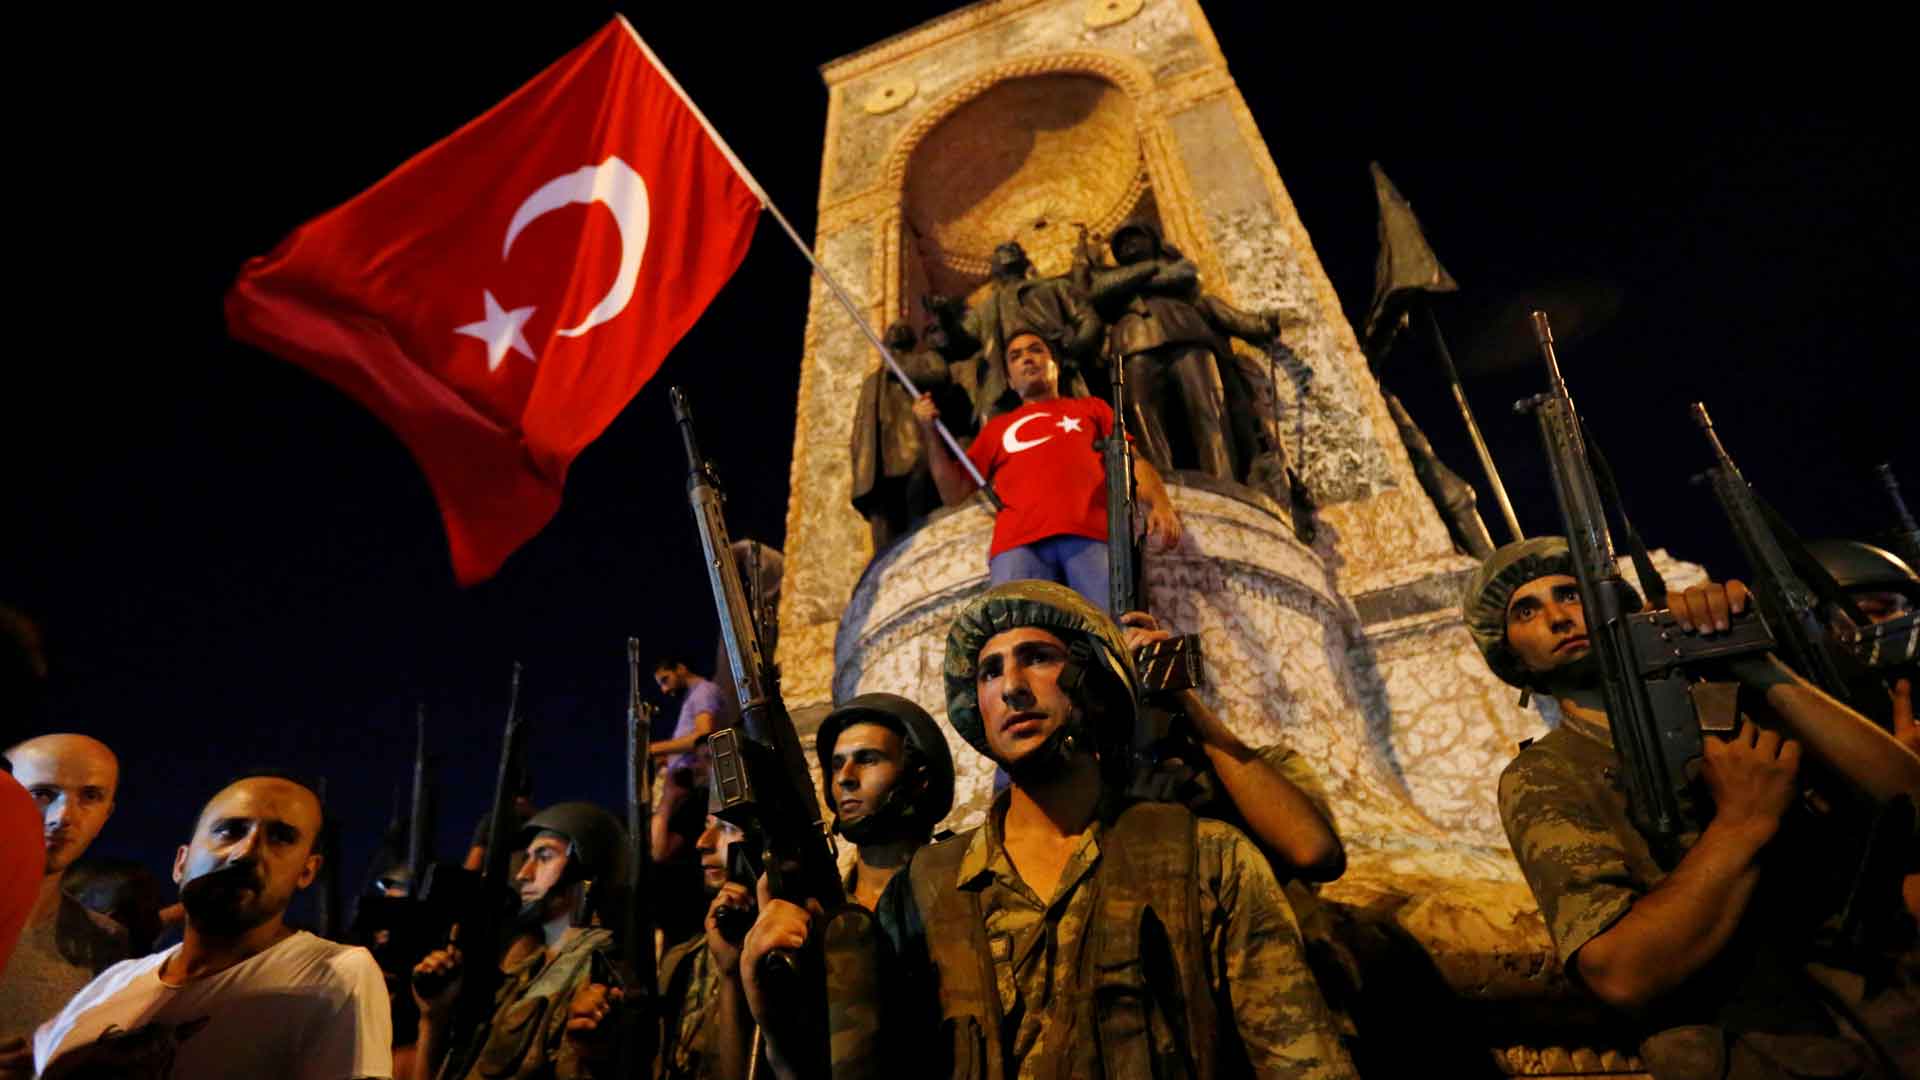 Estambul prohíbe una celebración callejera en Nochevieja por seguridad